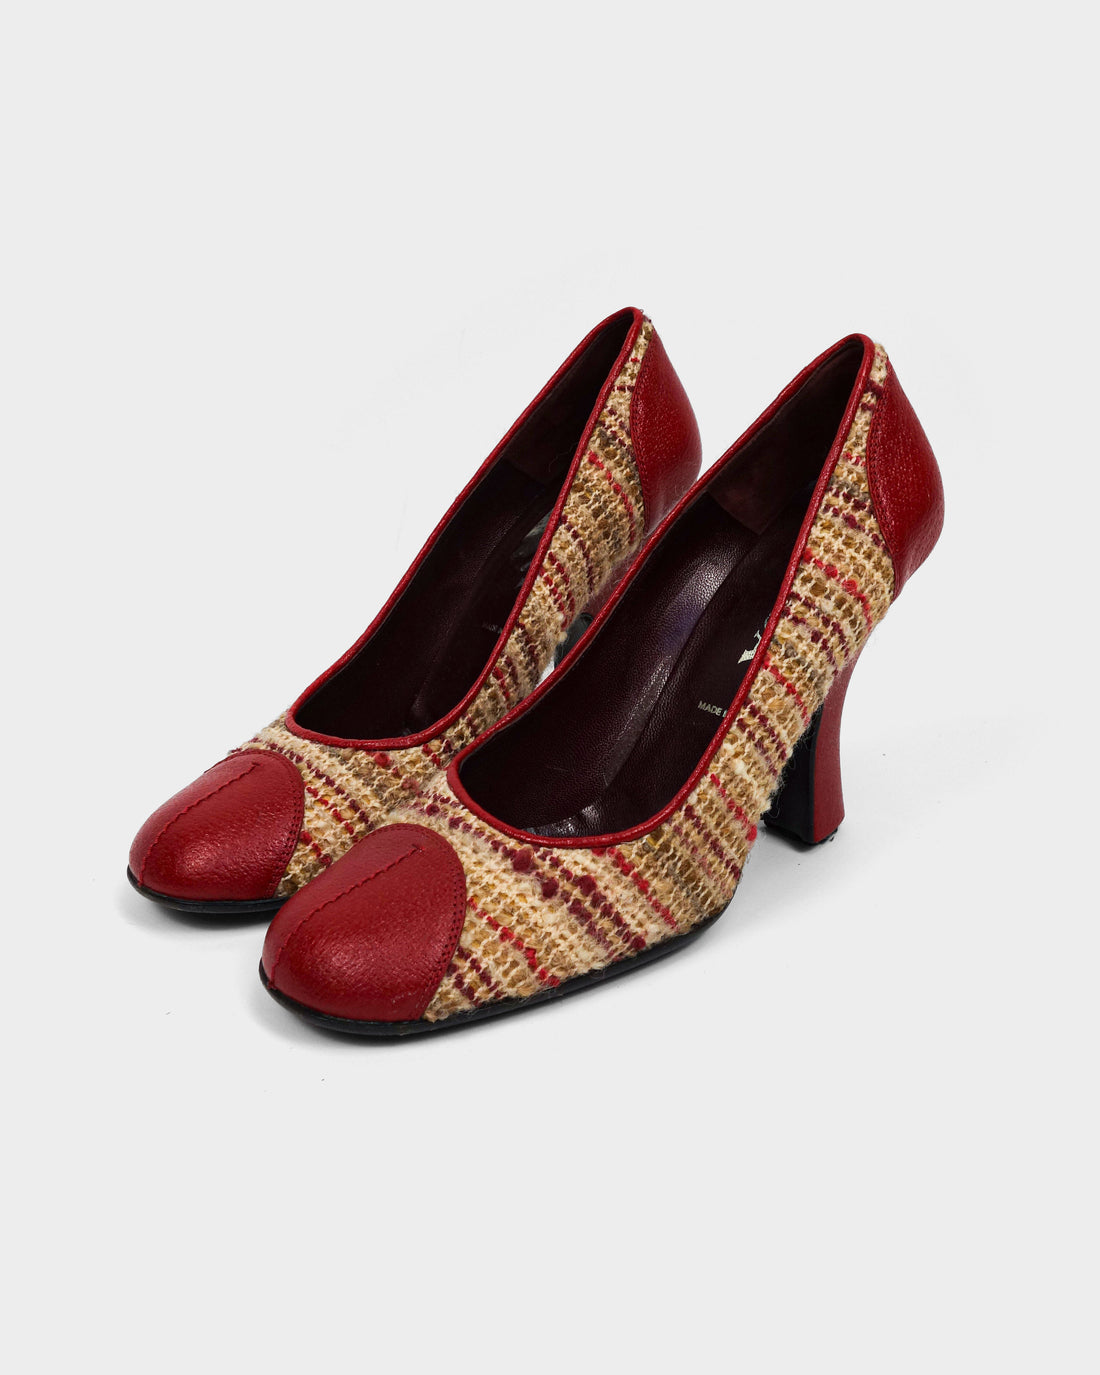 Prada Wool + Leather Red Heels 2000's